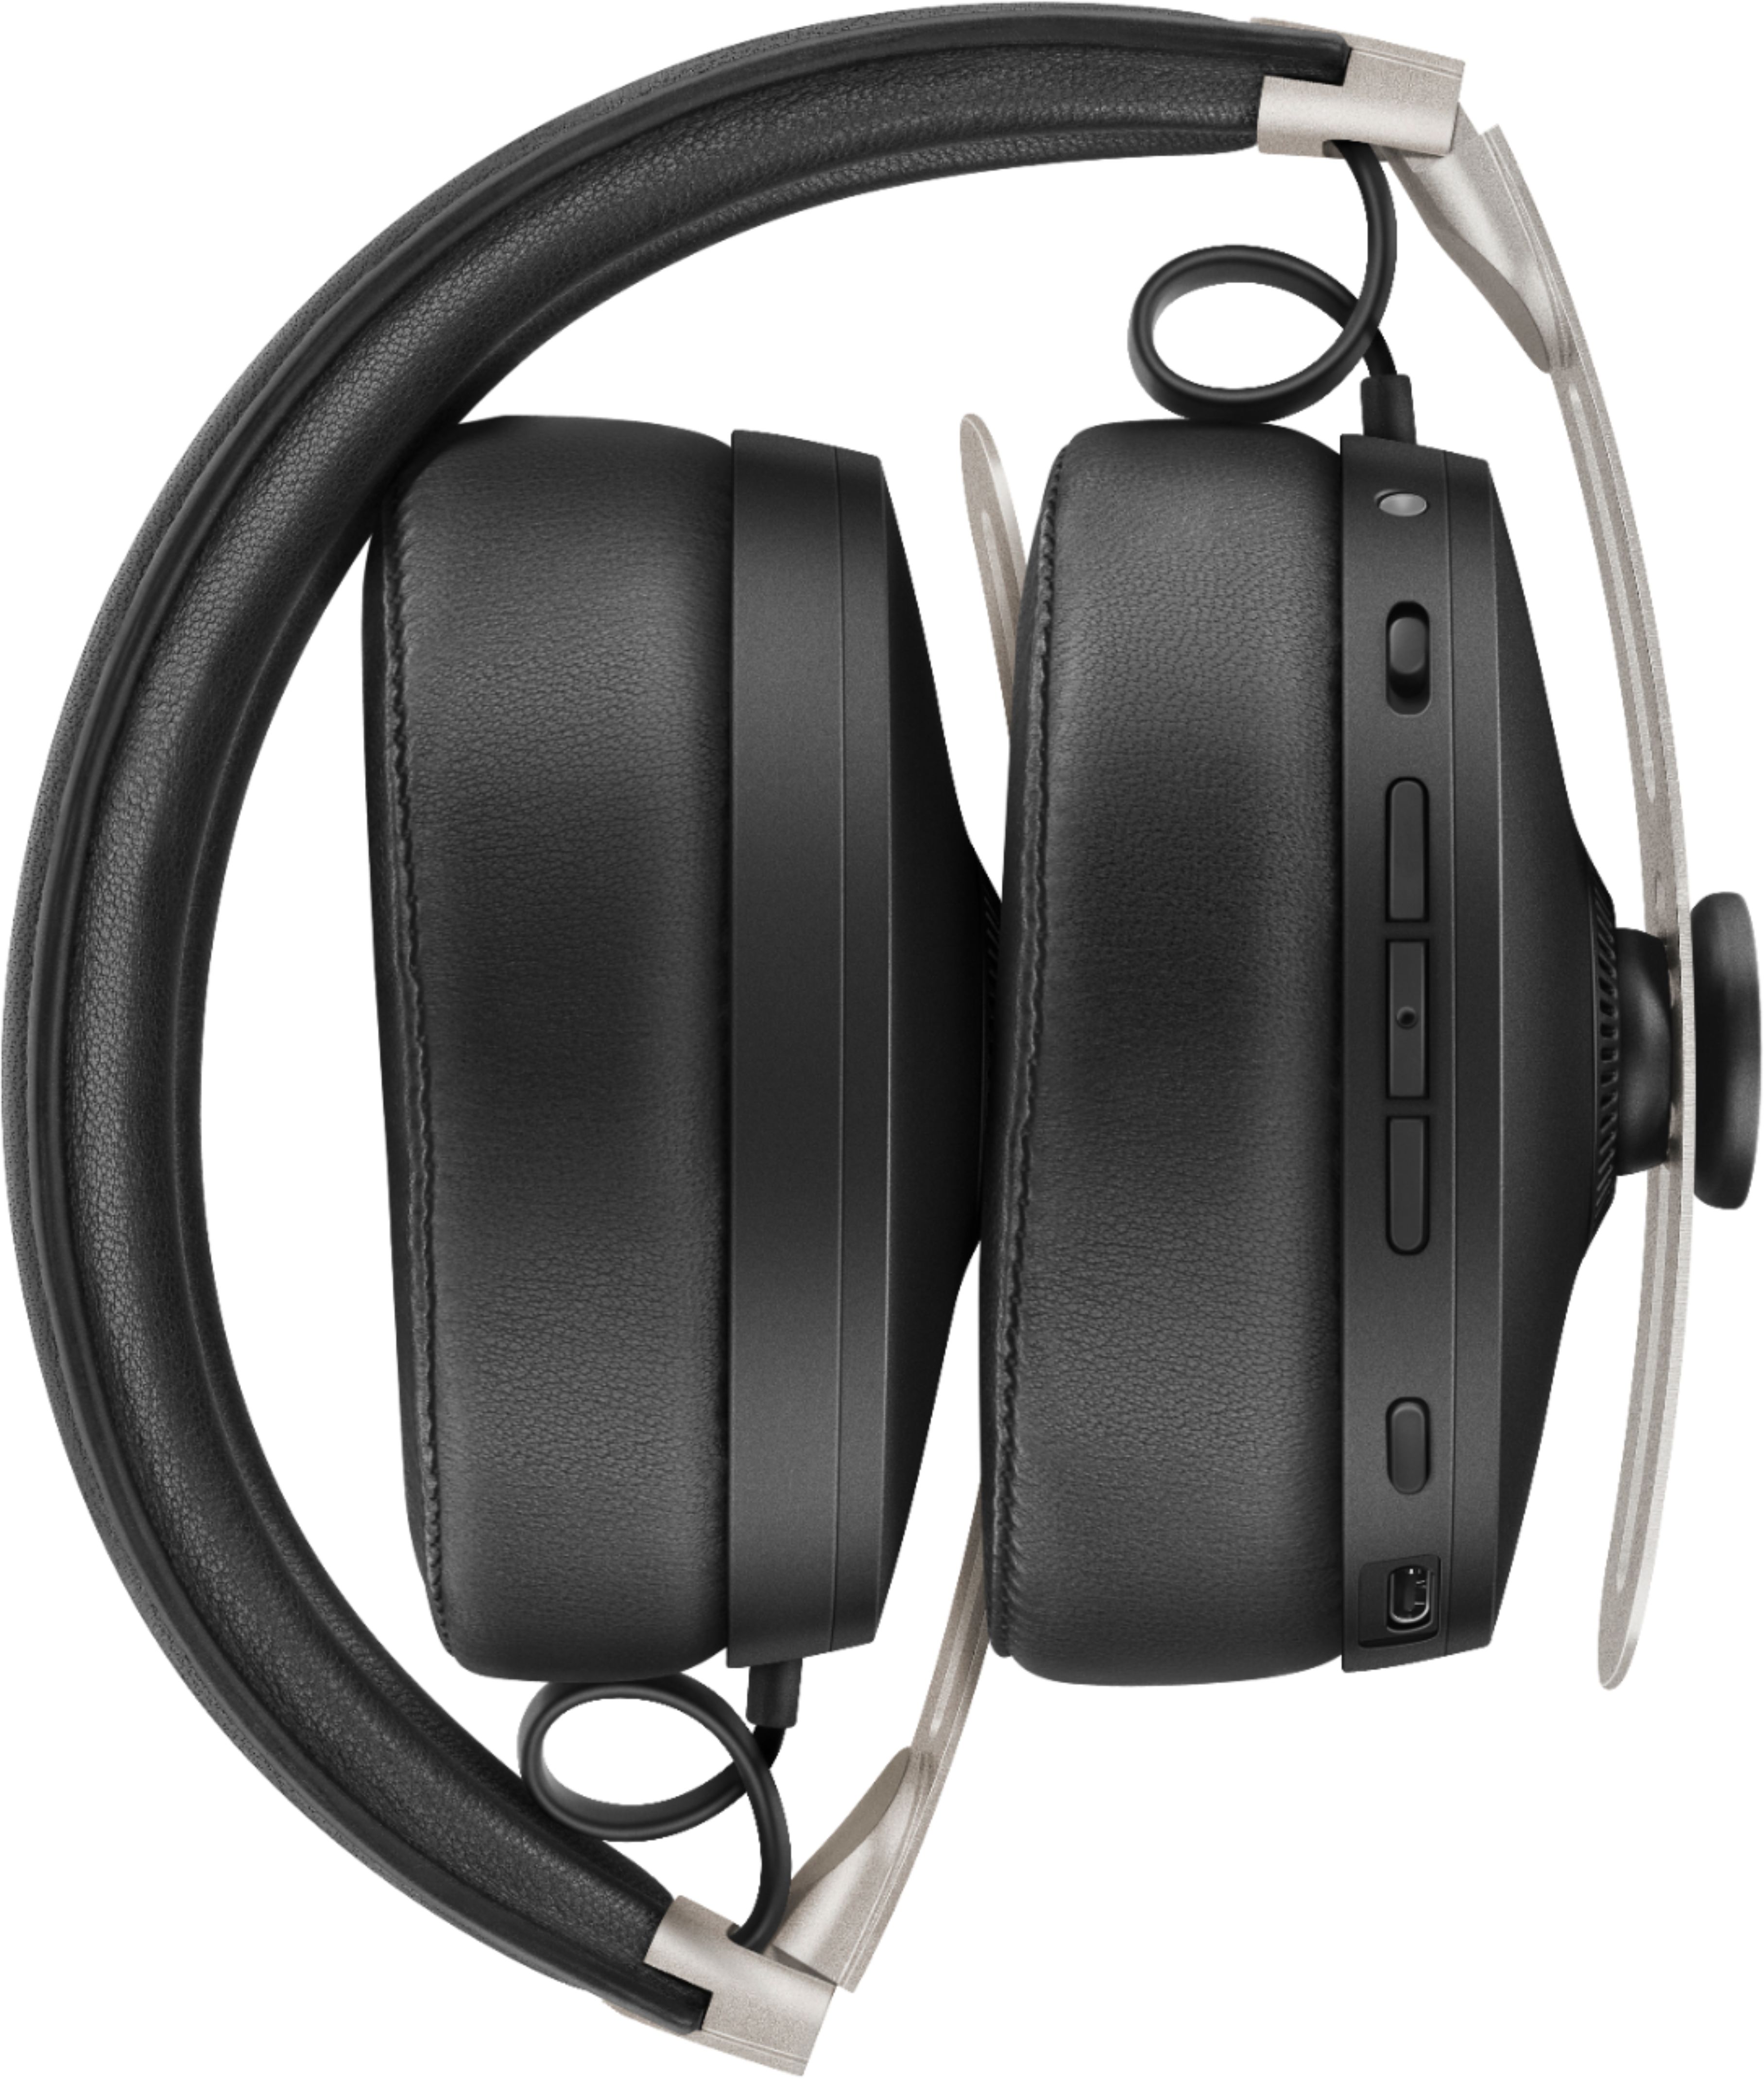 Best Buy: Sennheiser MOMENTUM Wireless Noise-Canceling Over-the